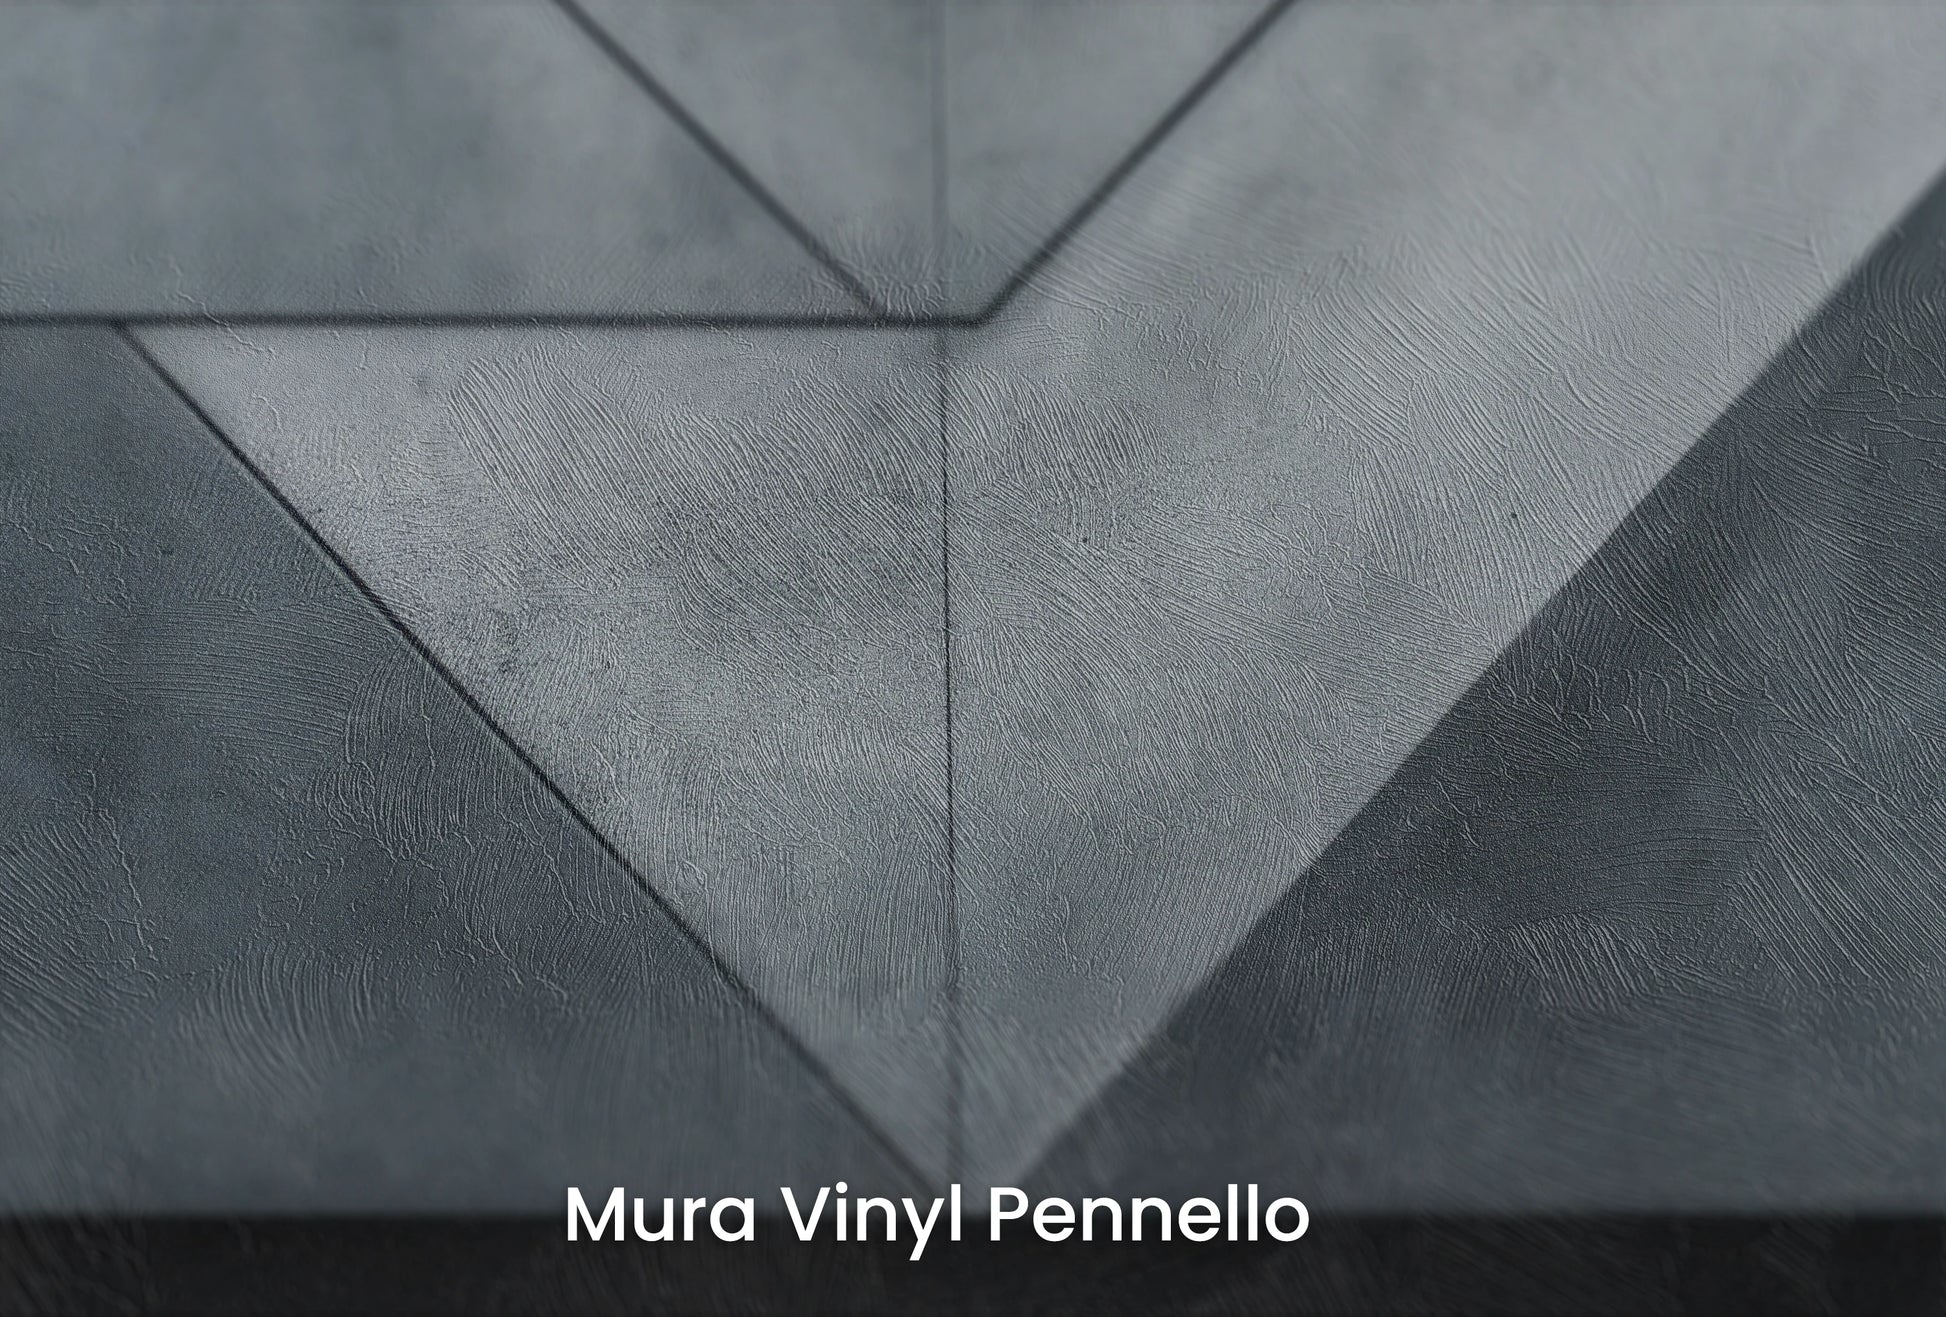 Zbliżenie na artystyczną fototapetę o nazwie Inverted Pyramid na podłożu Mura Vinyl Pennello - faktura pociągnięć pędzla malarskiego.